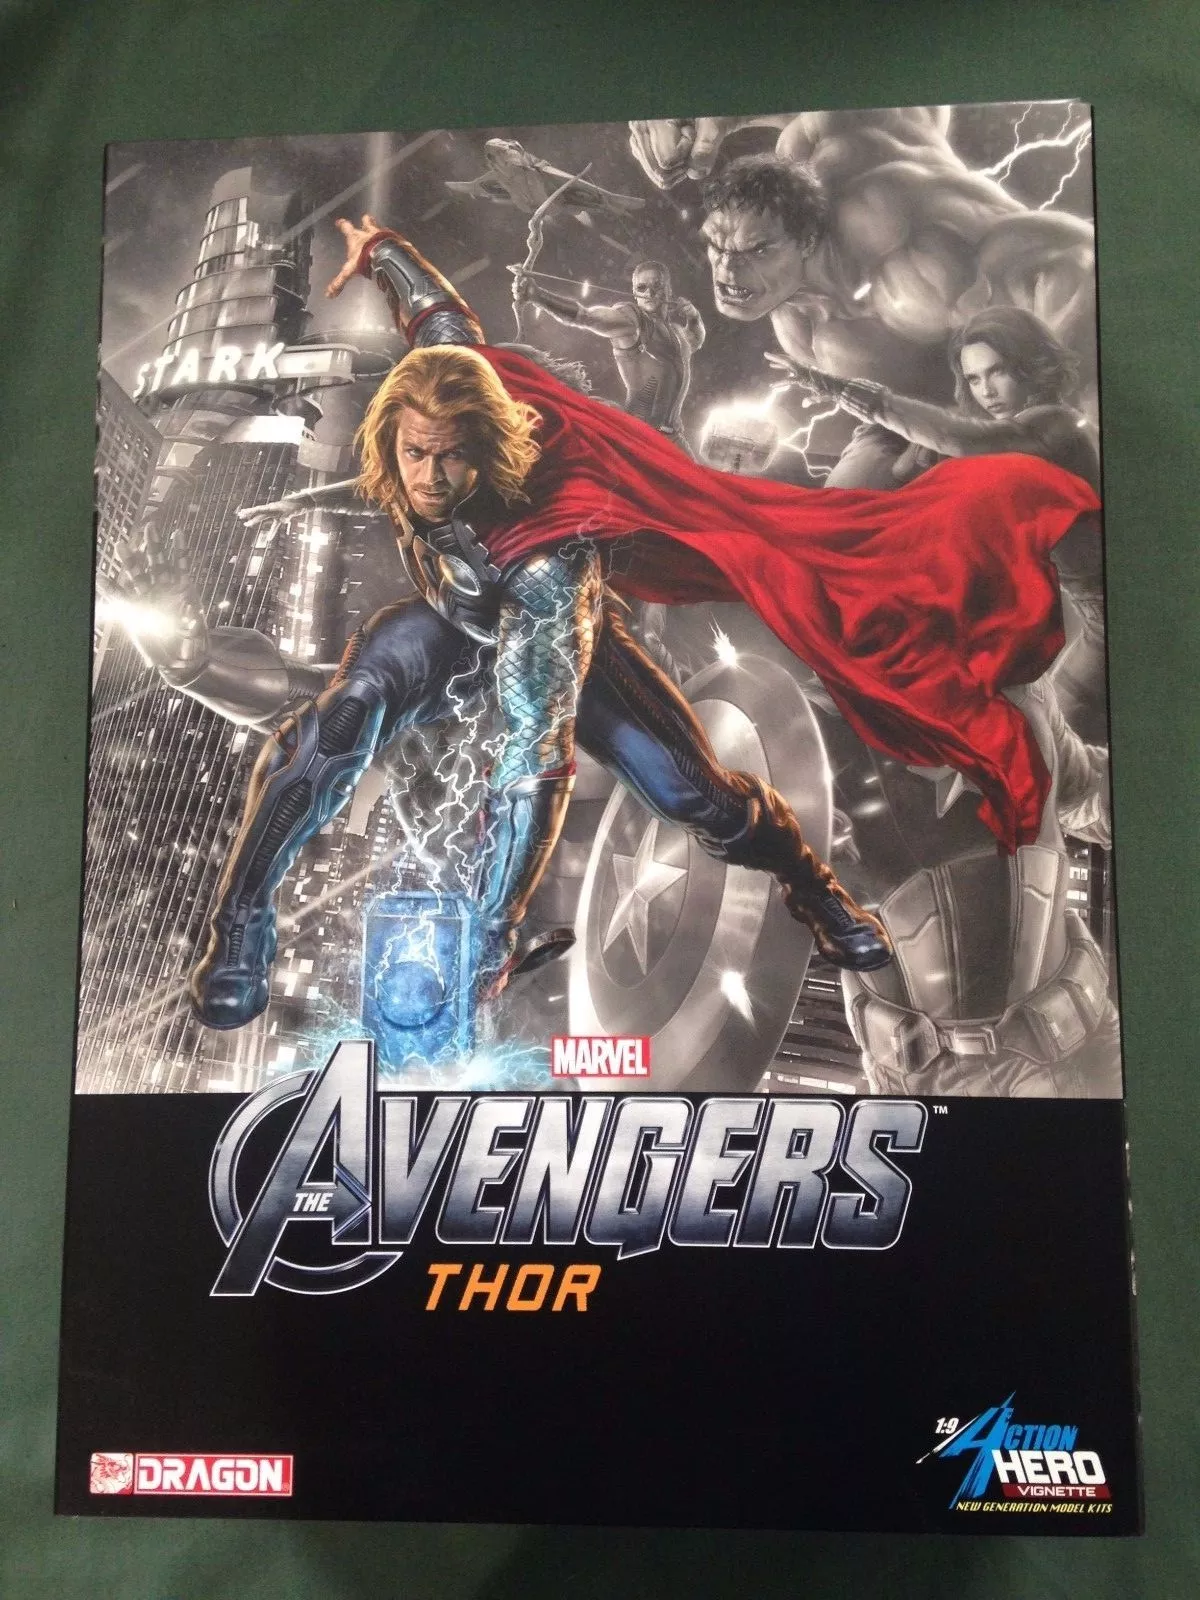 Dragon 1/9 Scale Action Hero Vignette Marvel The Avengers Thor Model Kit 38102 38102